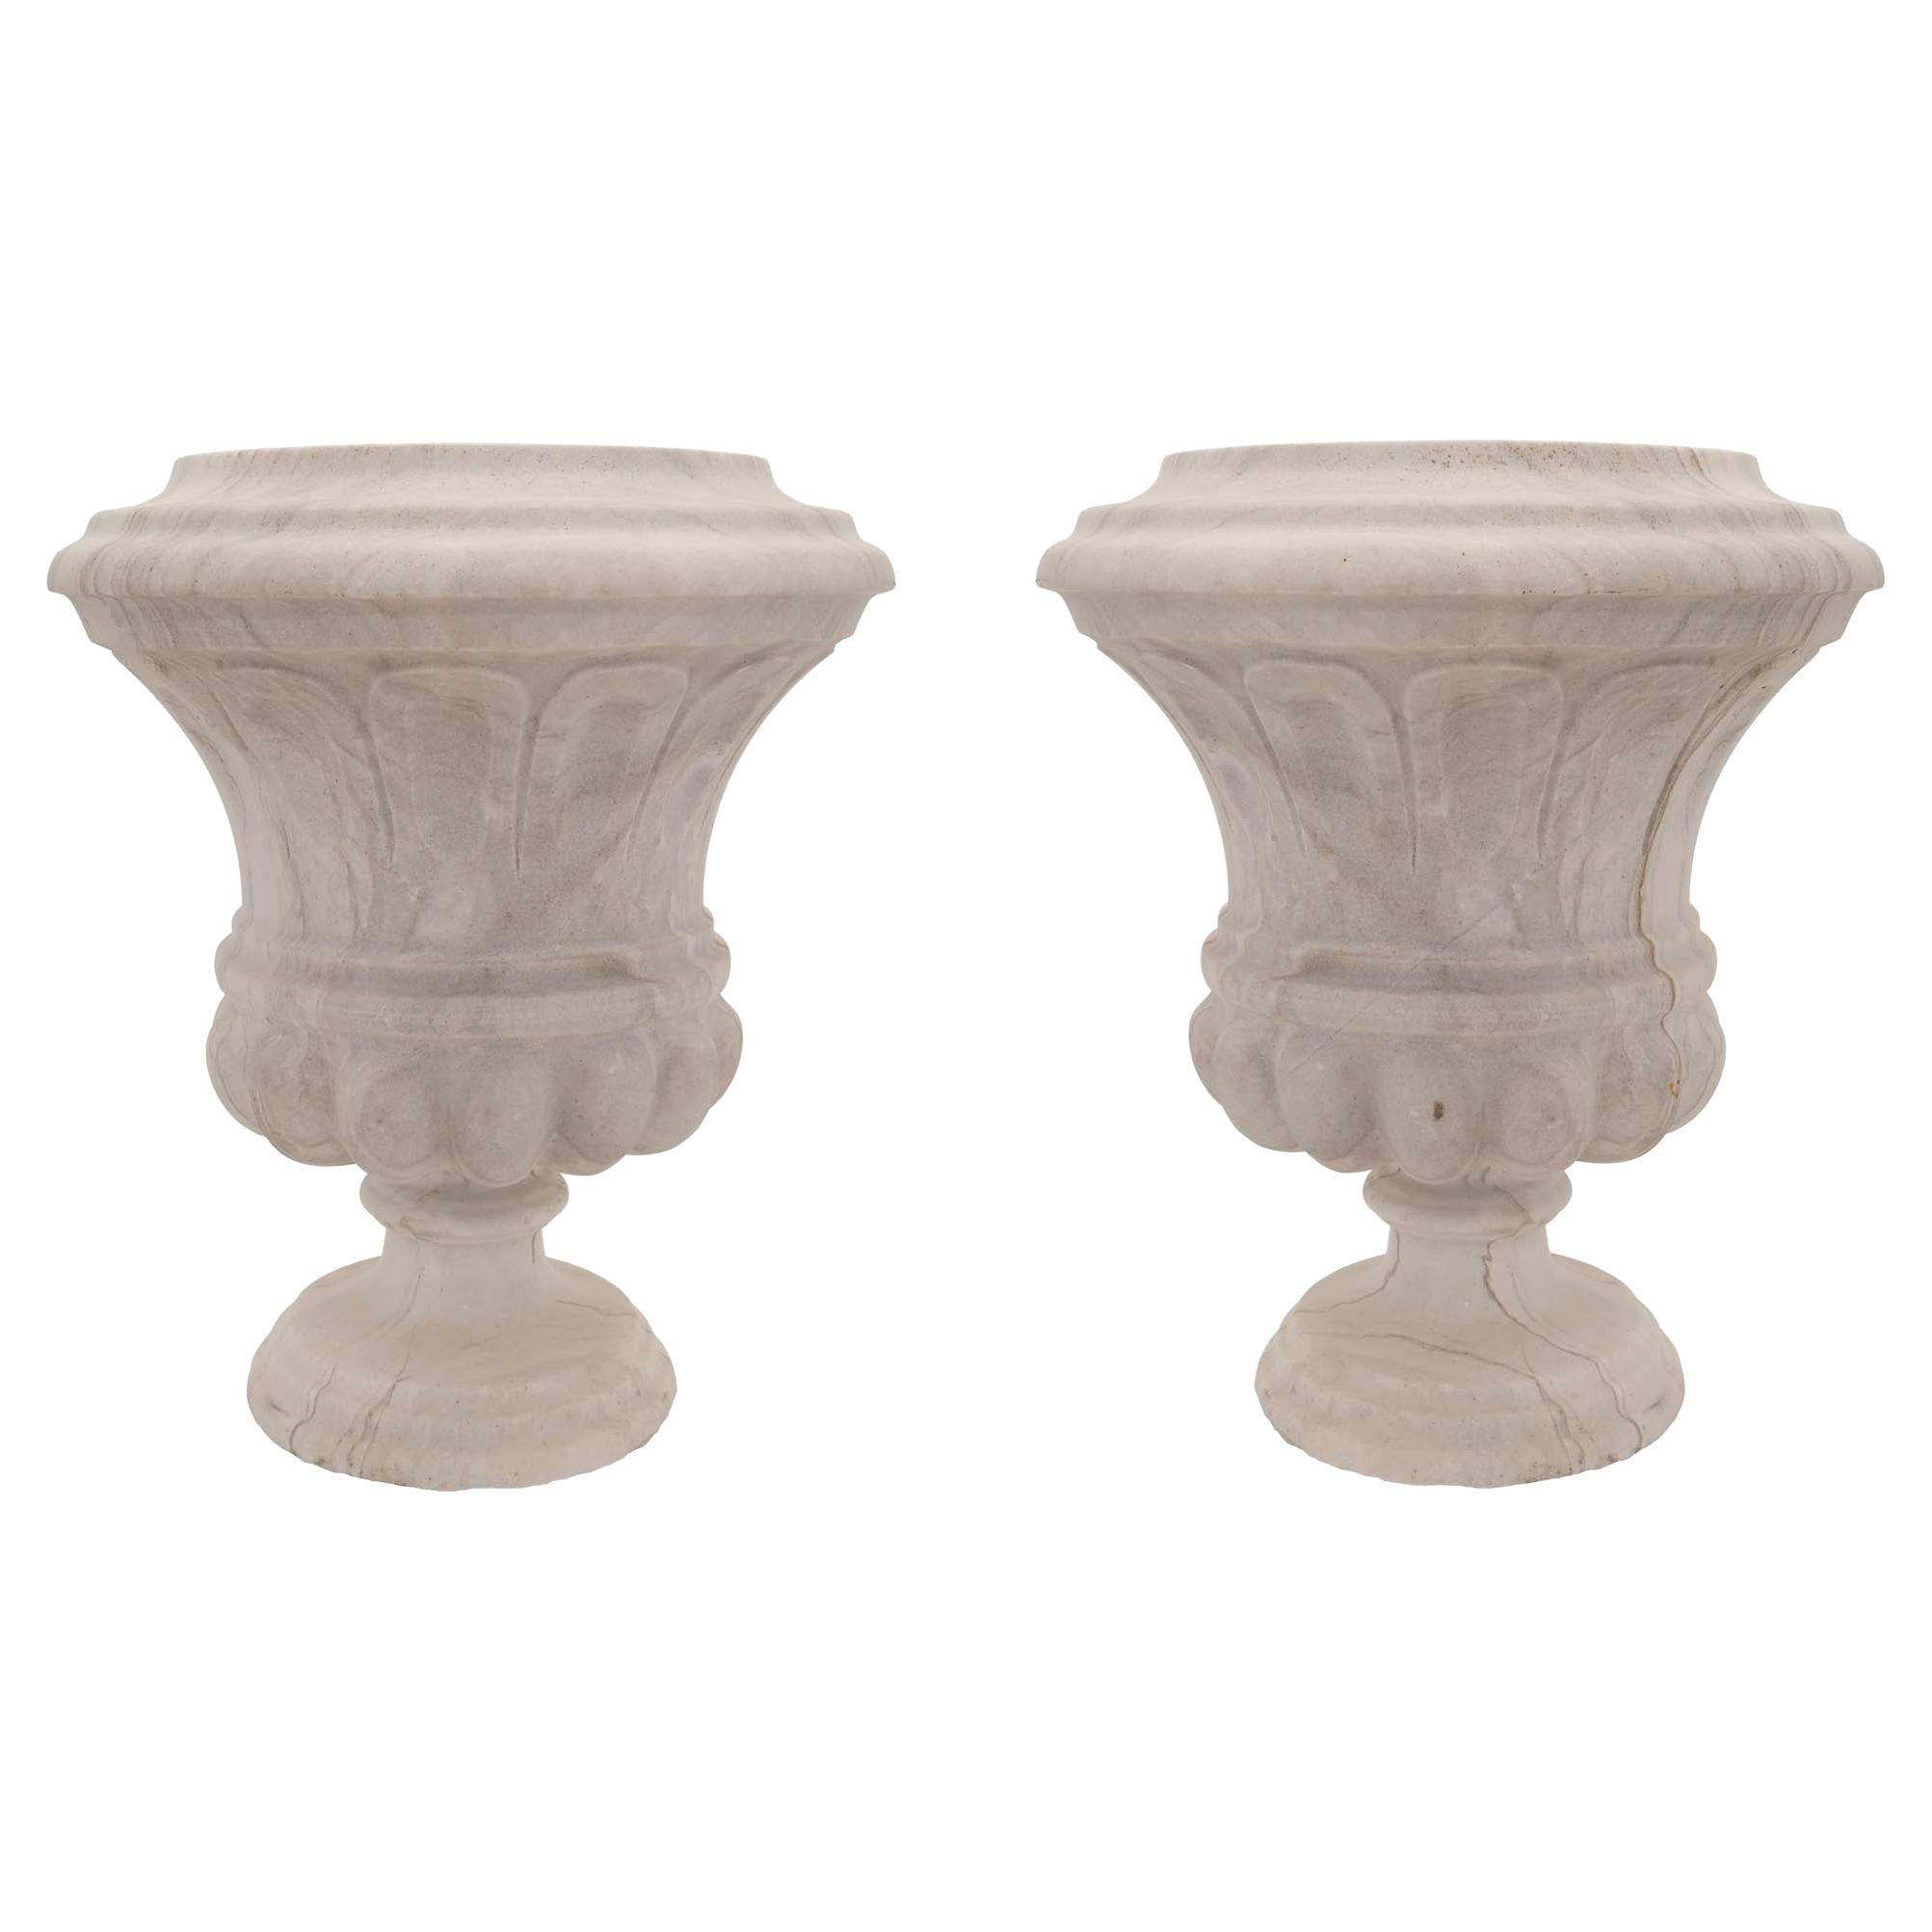 Paire d'urnes italiennes du XIXe siècle en marbre de style Louis XVI du XIXe siècle